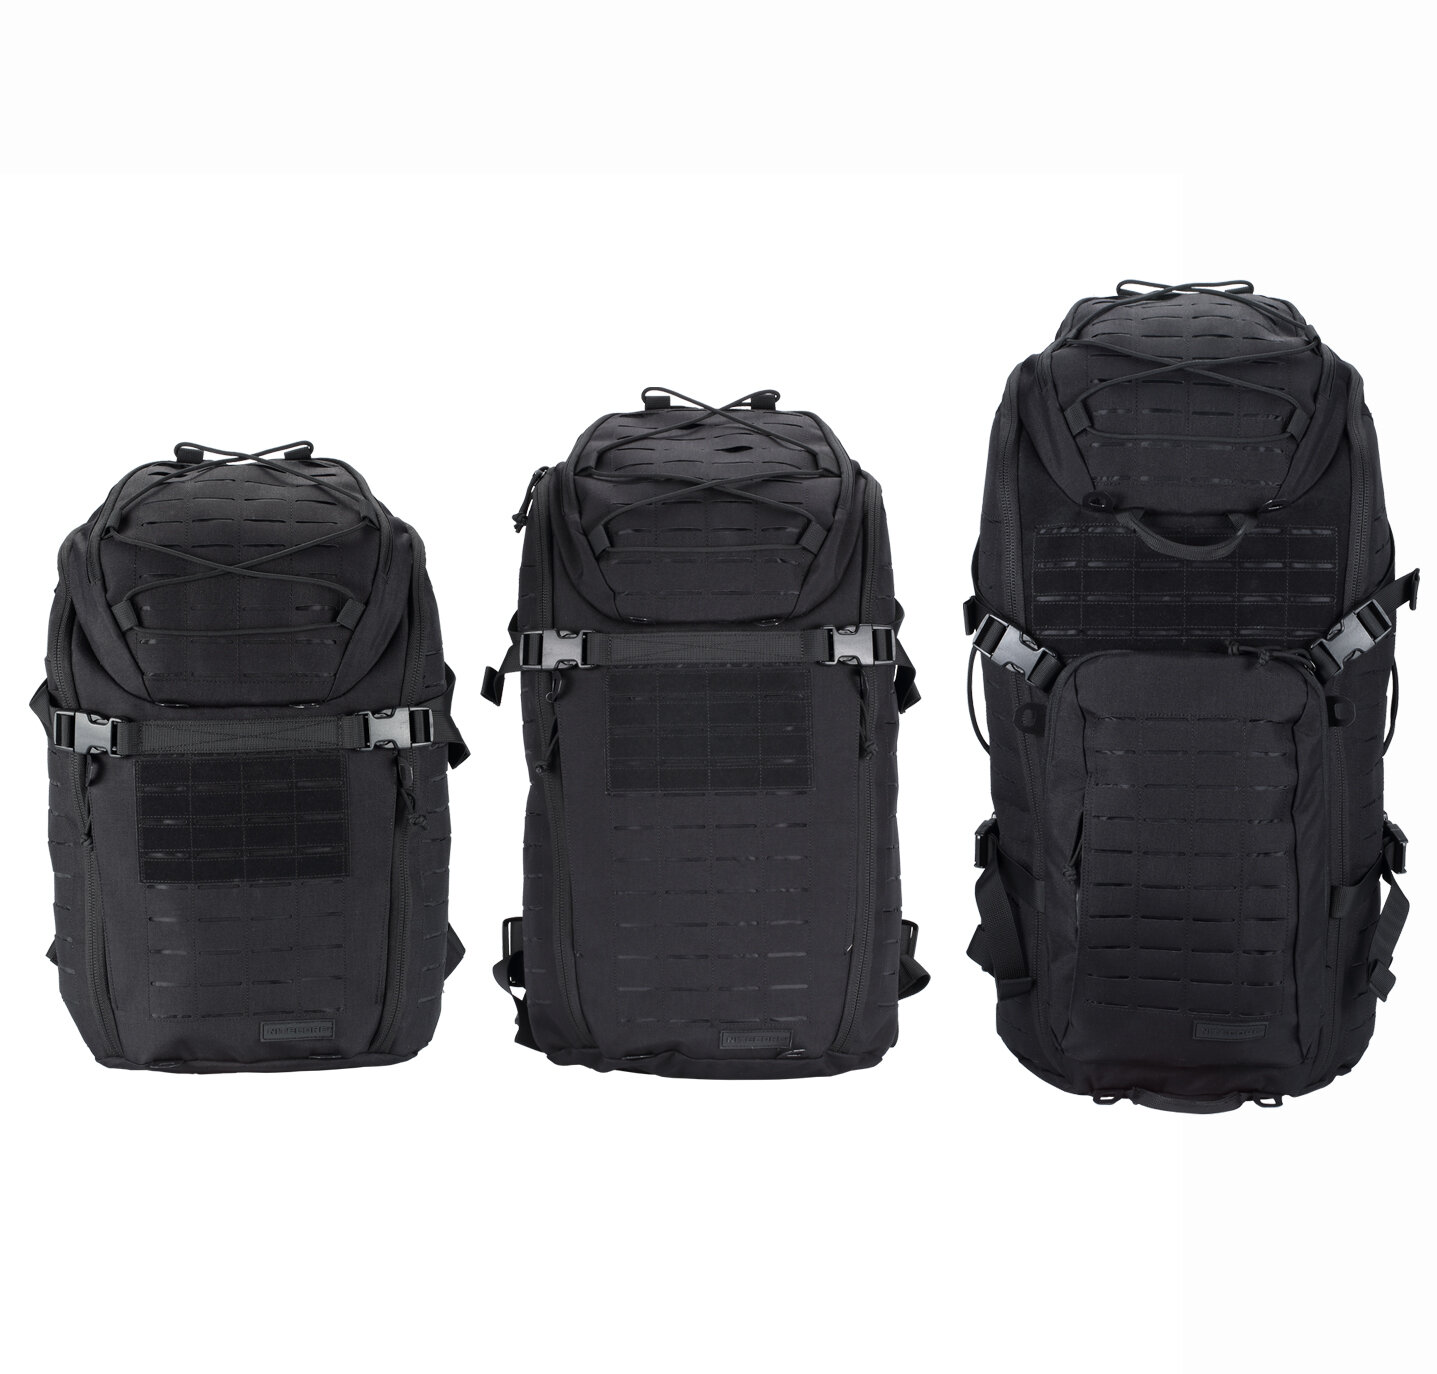 Ноуткор МП20/МП25/МП30 20Л/25Л/30Л Модульный тактический рюкзак для открытых пространств, водонепроницаемый, расширяемый, для путешествий, охоты и кемпинга.